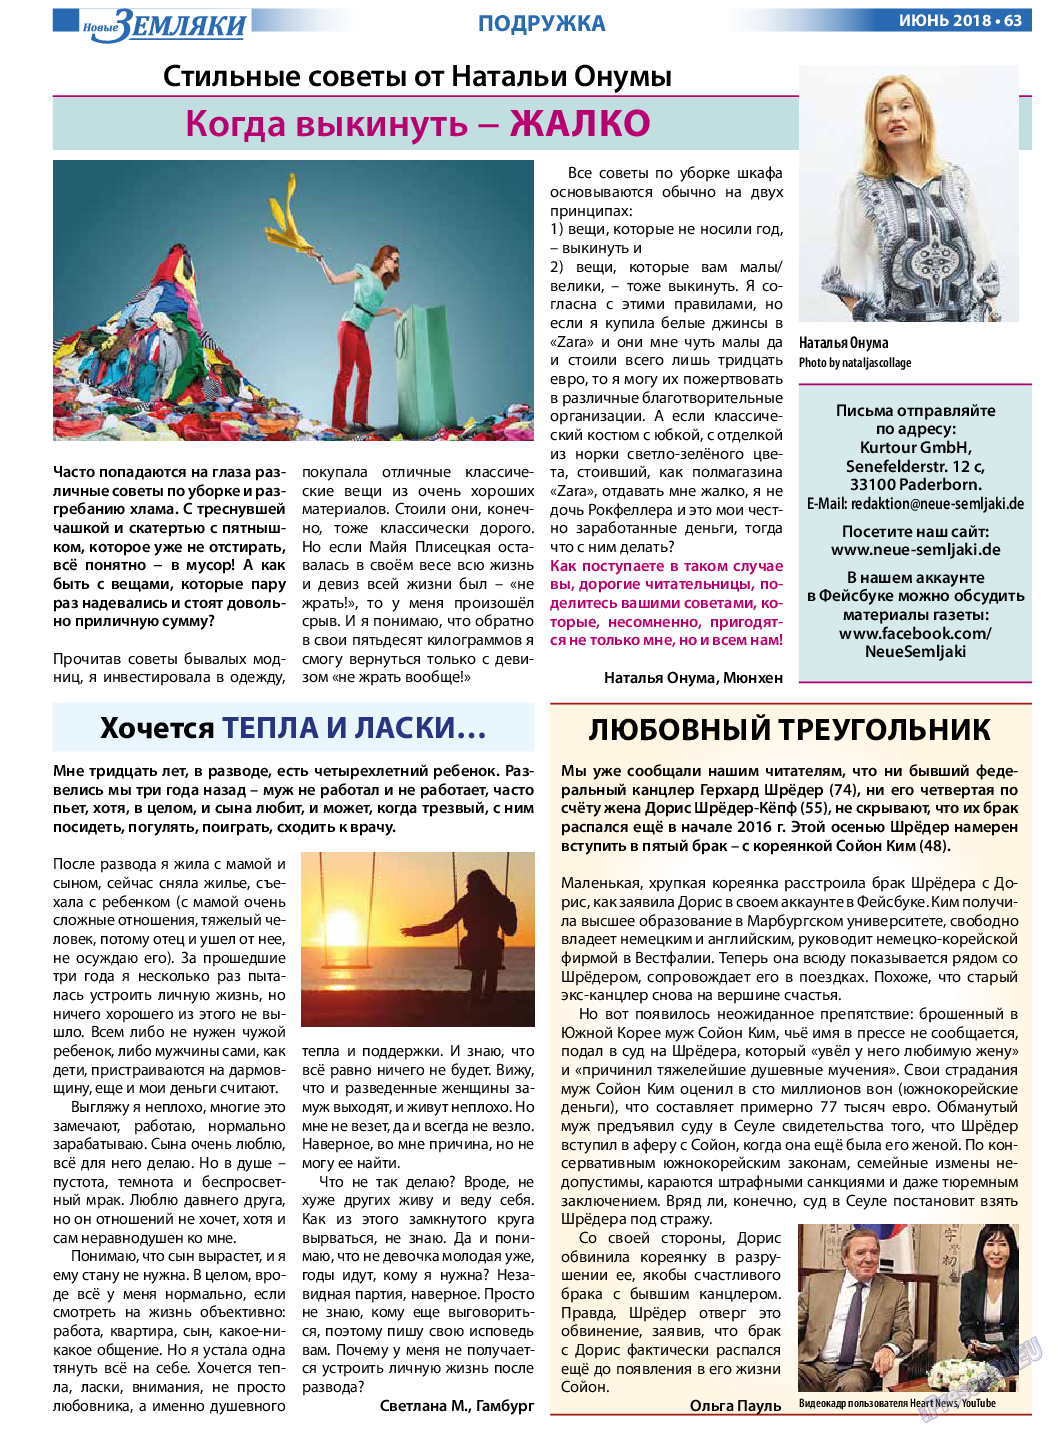 Новые Земляки, газета. 2018 №6 стр.63